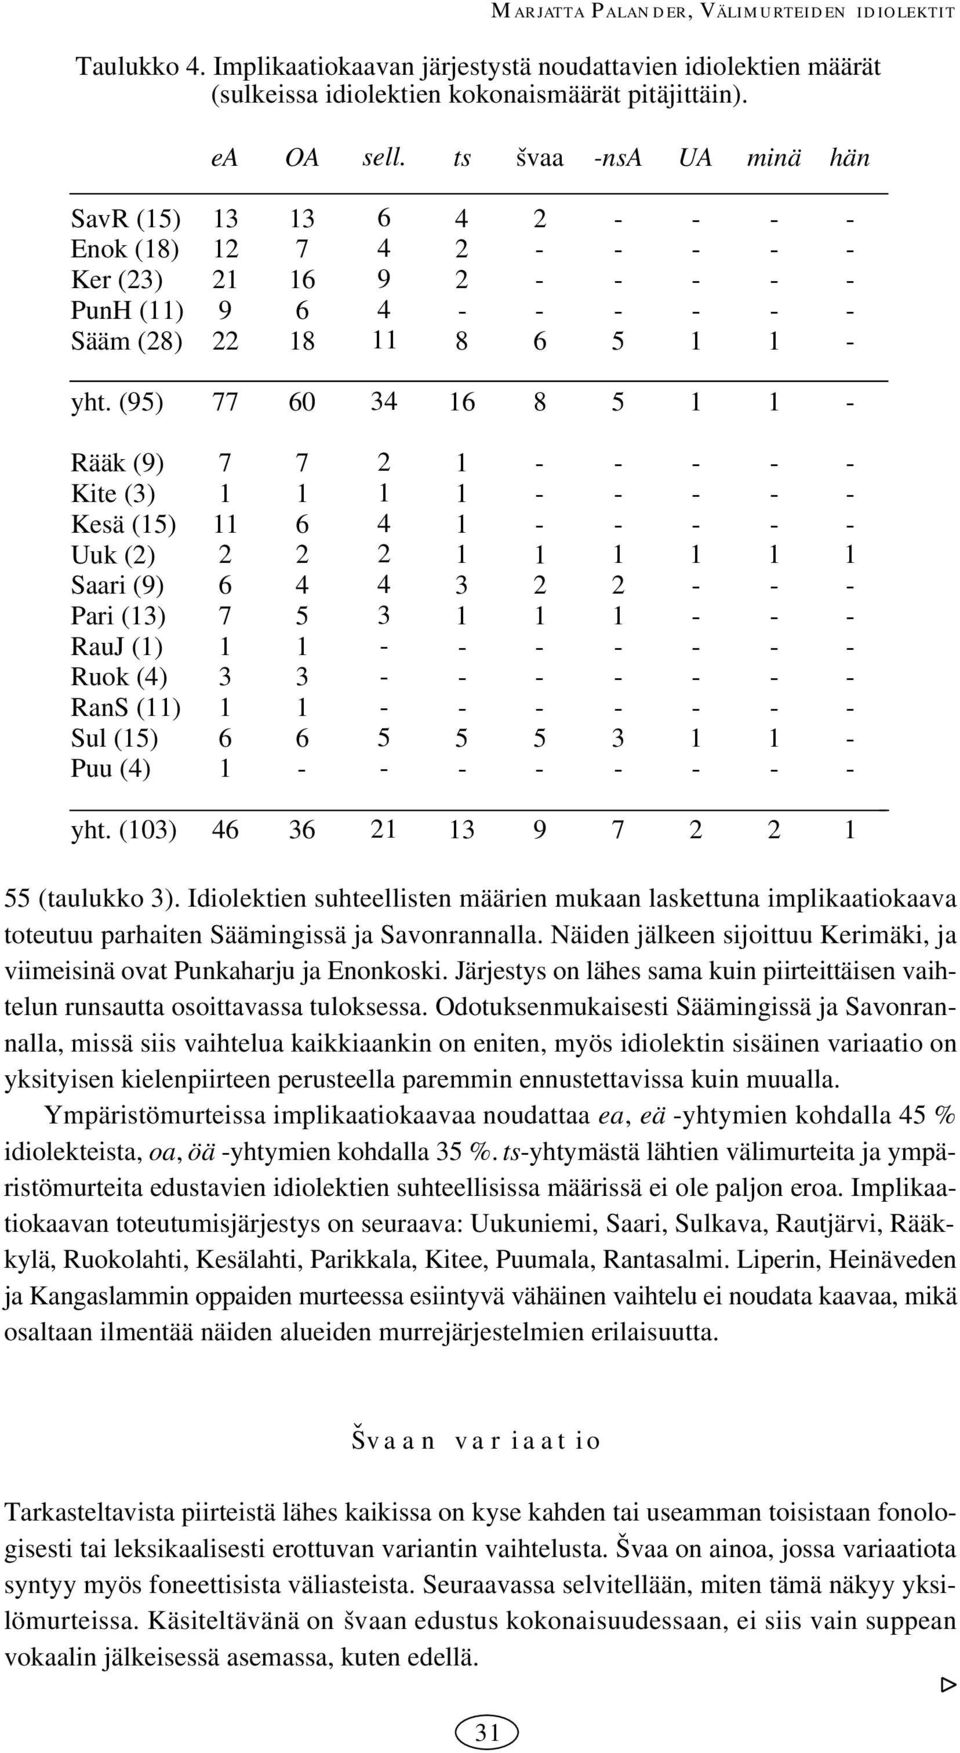 Idiolektien suhteellisten määrien mukaan laskettuna implikaatiokaava toteutuu parhaiten Säämingissä ja Savonrannalla. Näiden jälkeen sijoittuu Kerimäki, ja viimeisinä ovat Punkaharju ja Enonkoski.